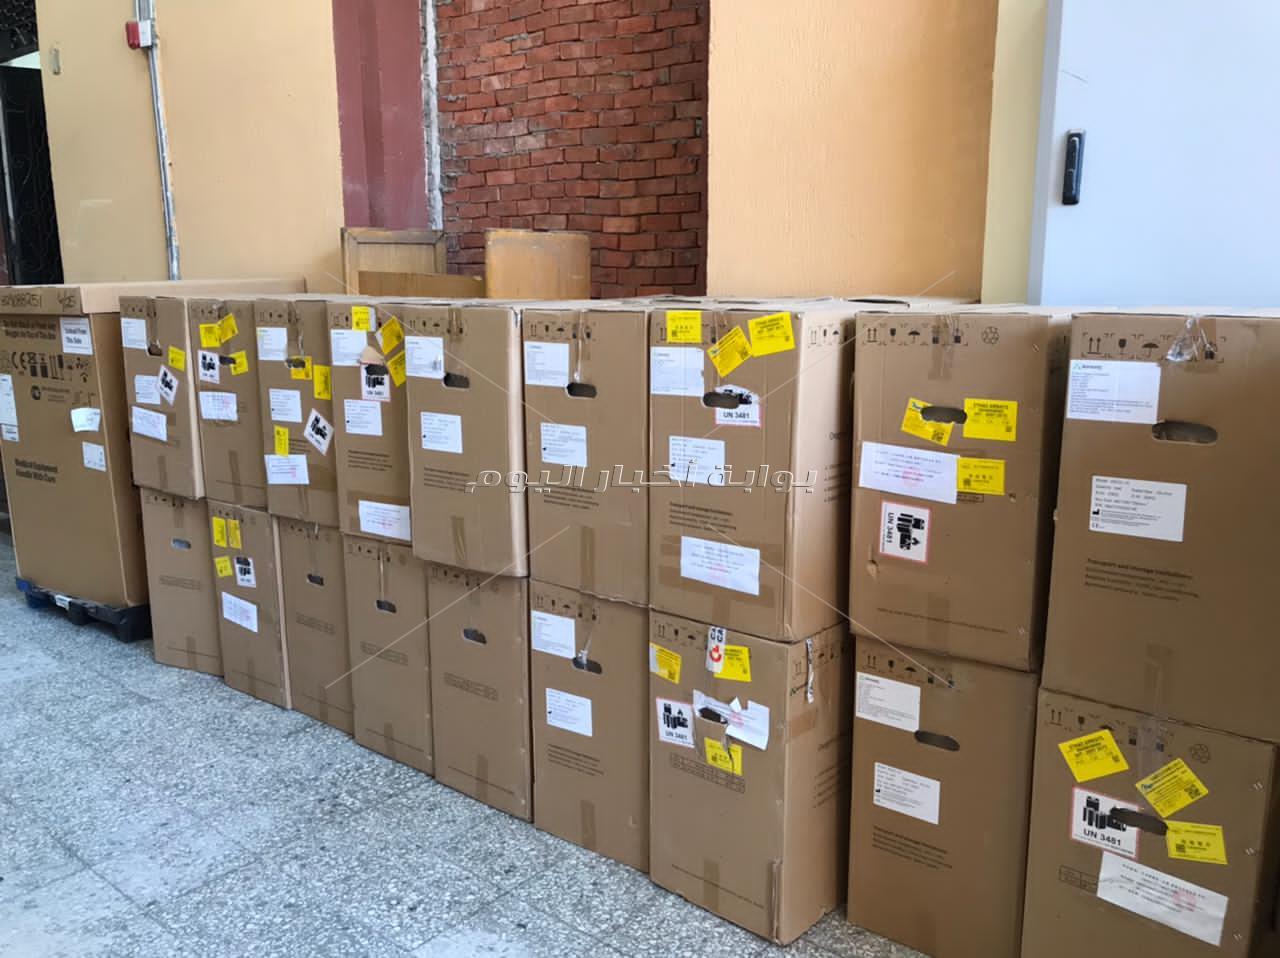 الصحة: إرسال 30 طنًا من الأجهزة والمستلزمات الطبية إلى دولة الهند للتصدي لفيروس كورونا